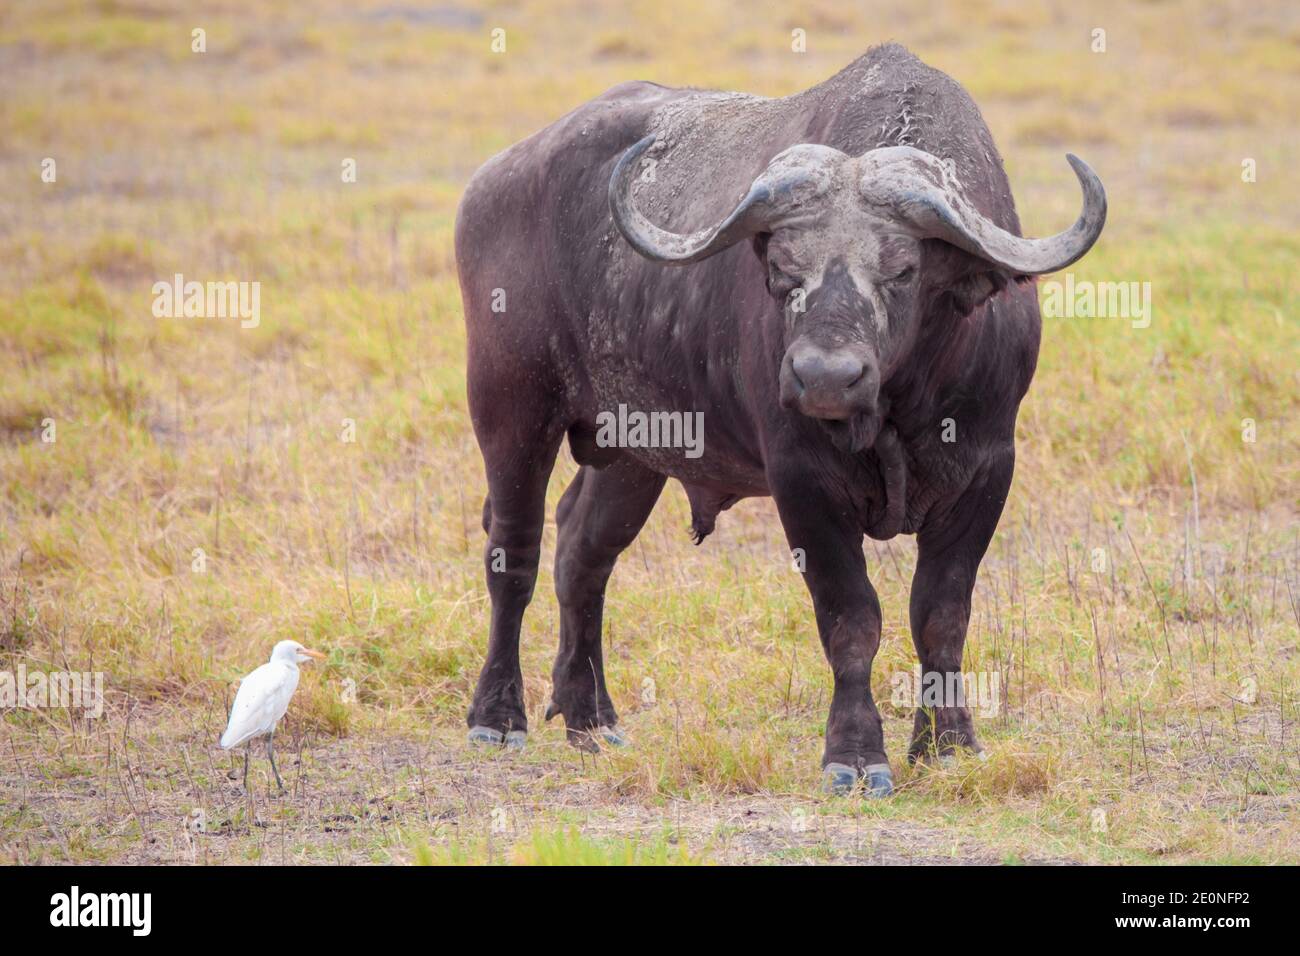 Buffalo and a white bird, on safari in Kenya. Stock Photo